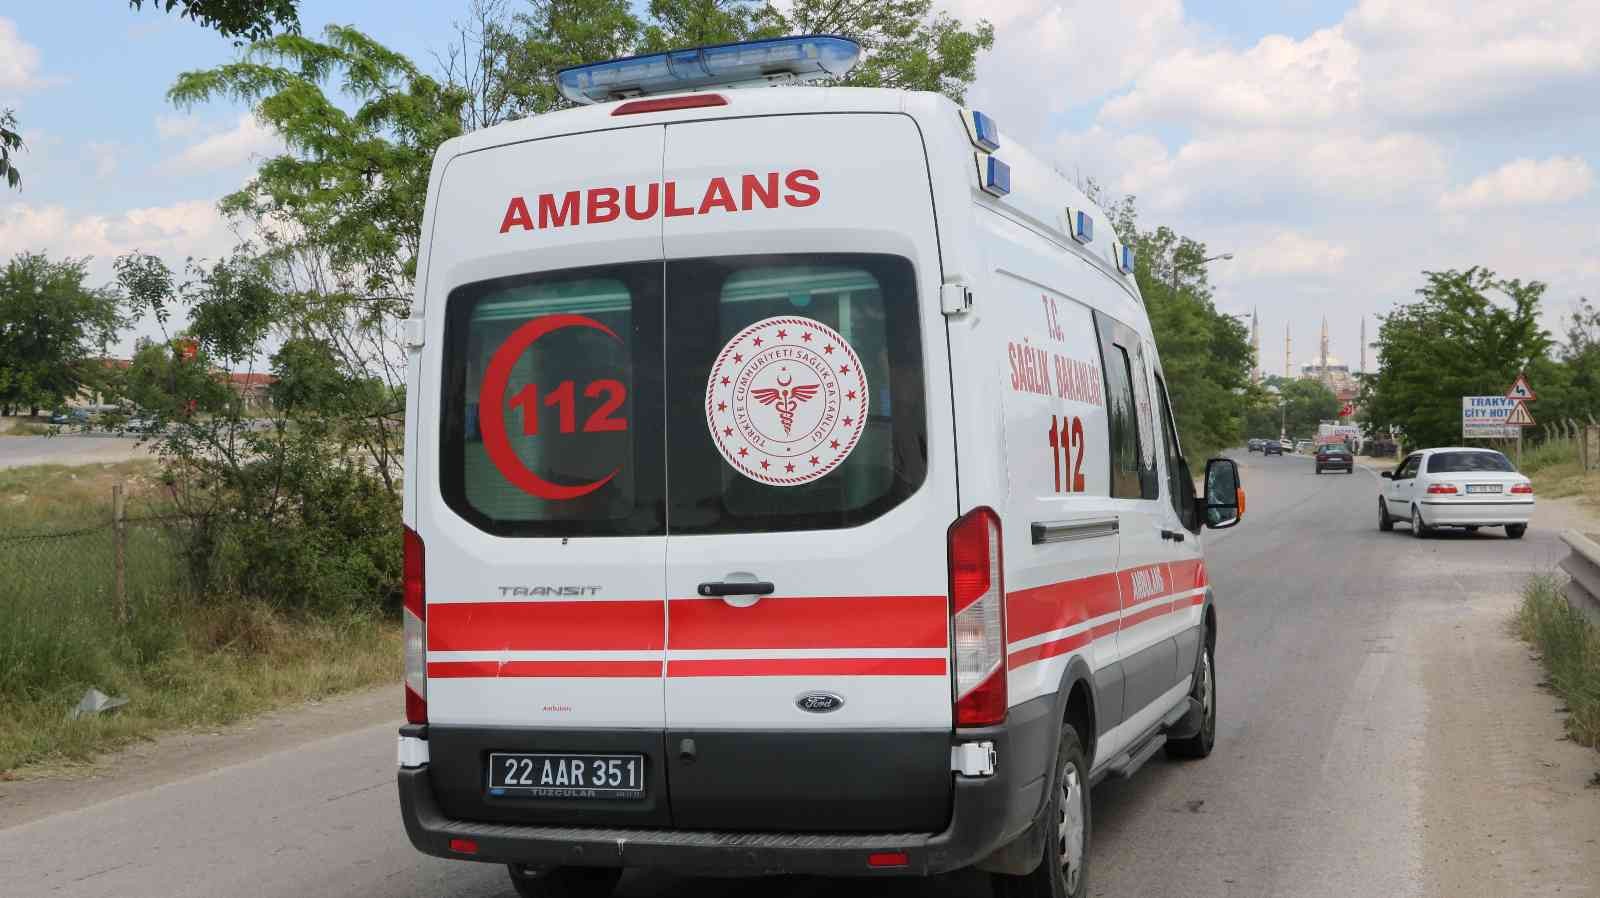 Edirne’de Kapıkule yolunda meydana gelen kazada yaralanan 2 sürücü hastaneye kaldırıldı. Edinilen bilgiye göre kaza, Edirne Kapıkule yolunda ...